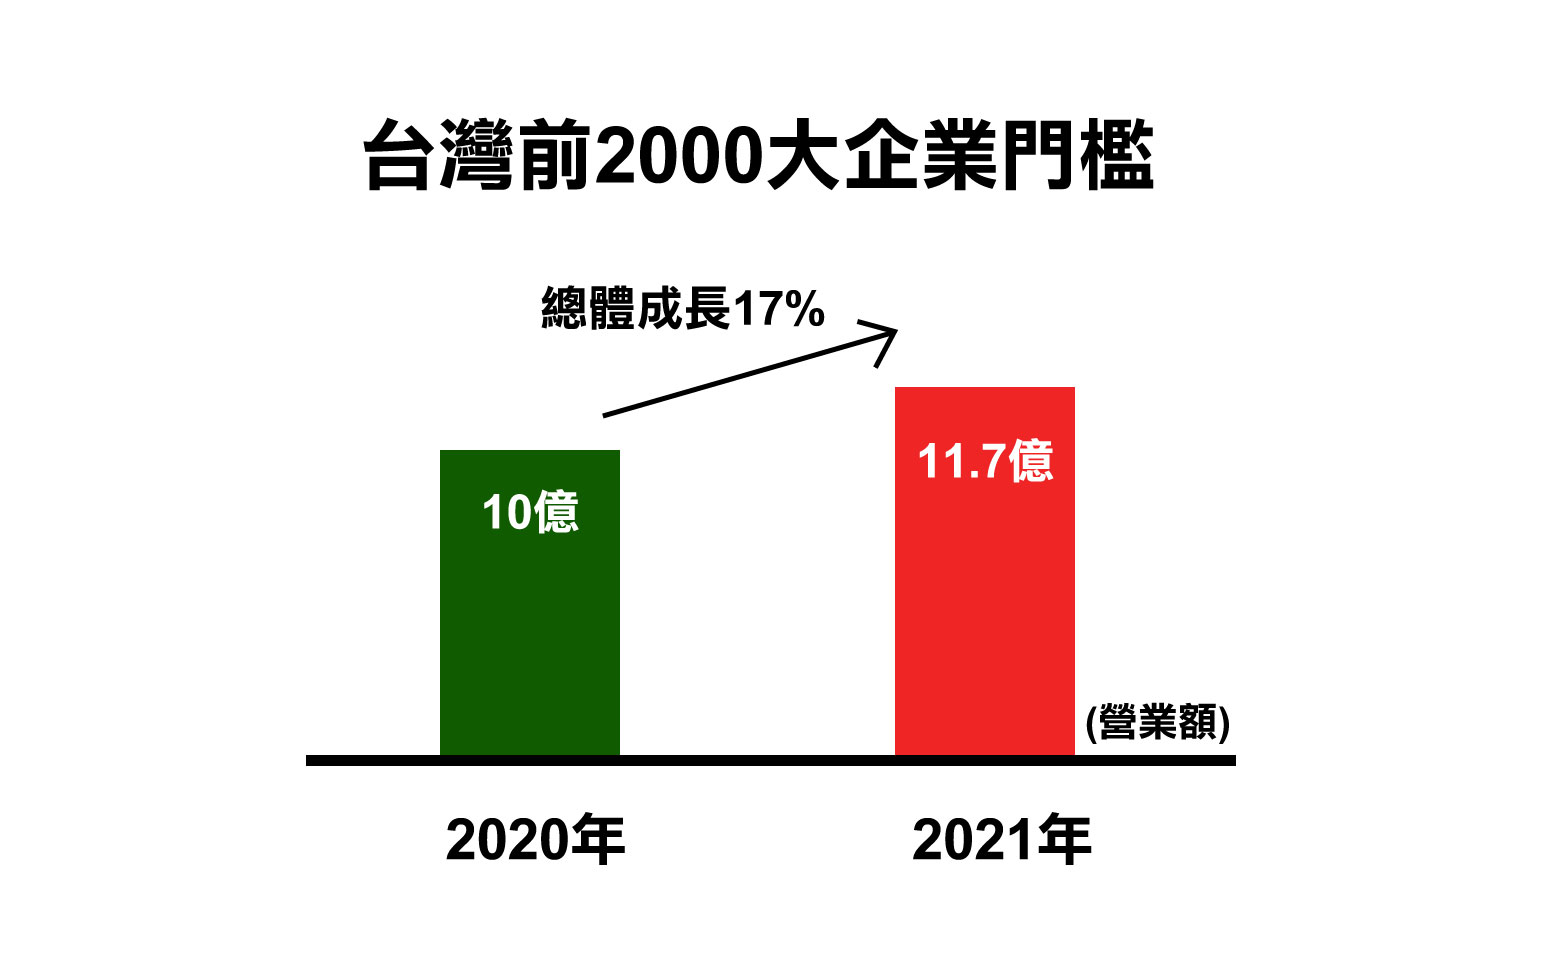 台灣前2000大企業的營業額門檻